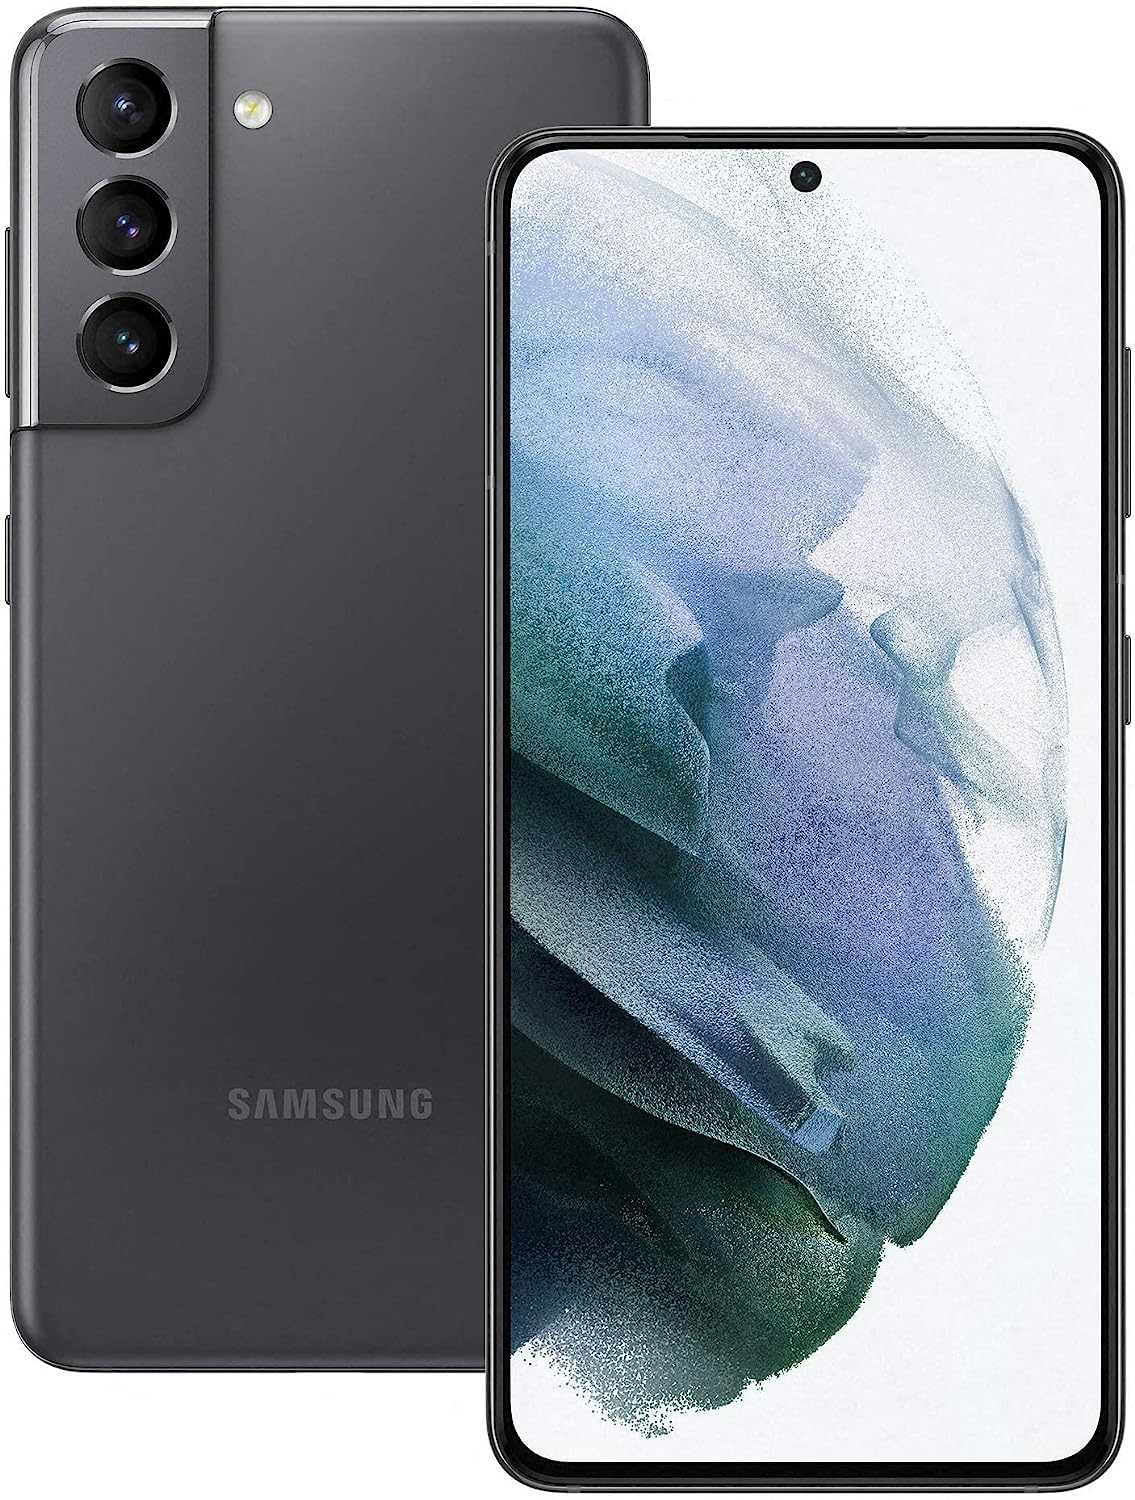 Samsung Galaxy S21 5G 128GB Grey Very Good 128GB Grey Very Good